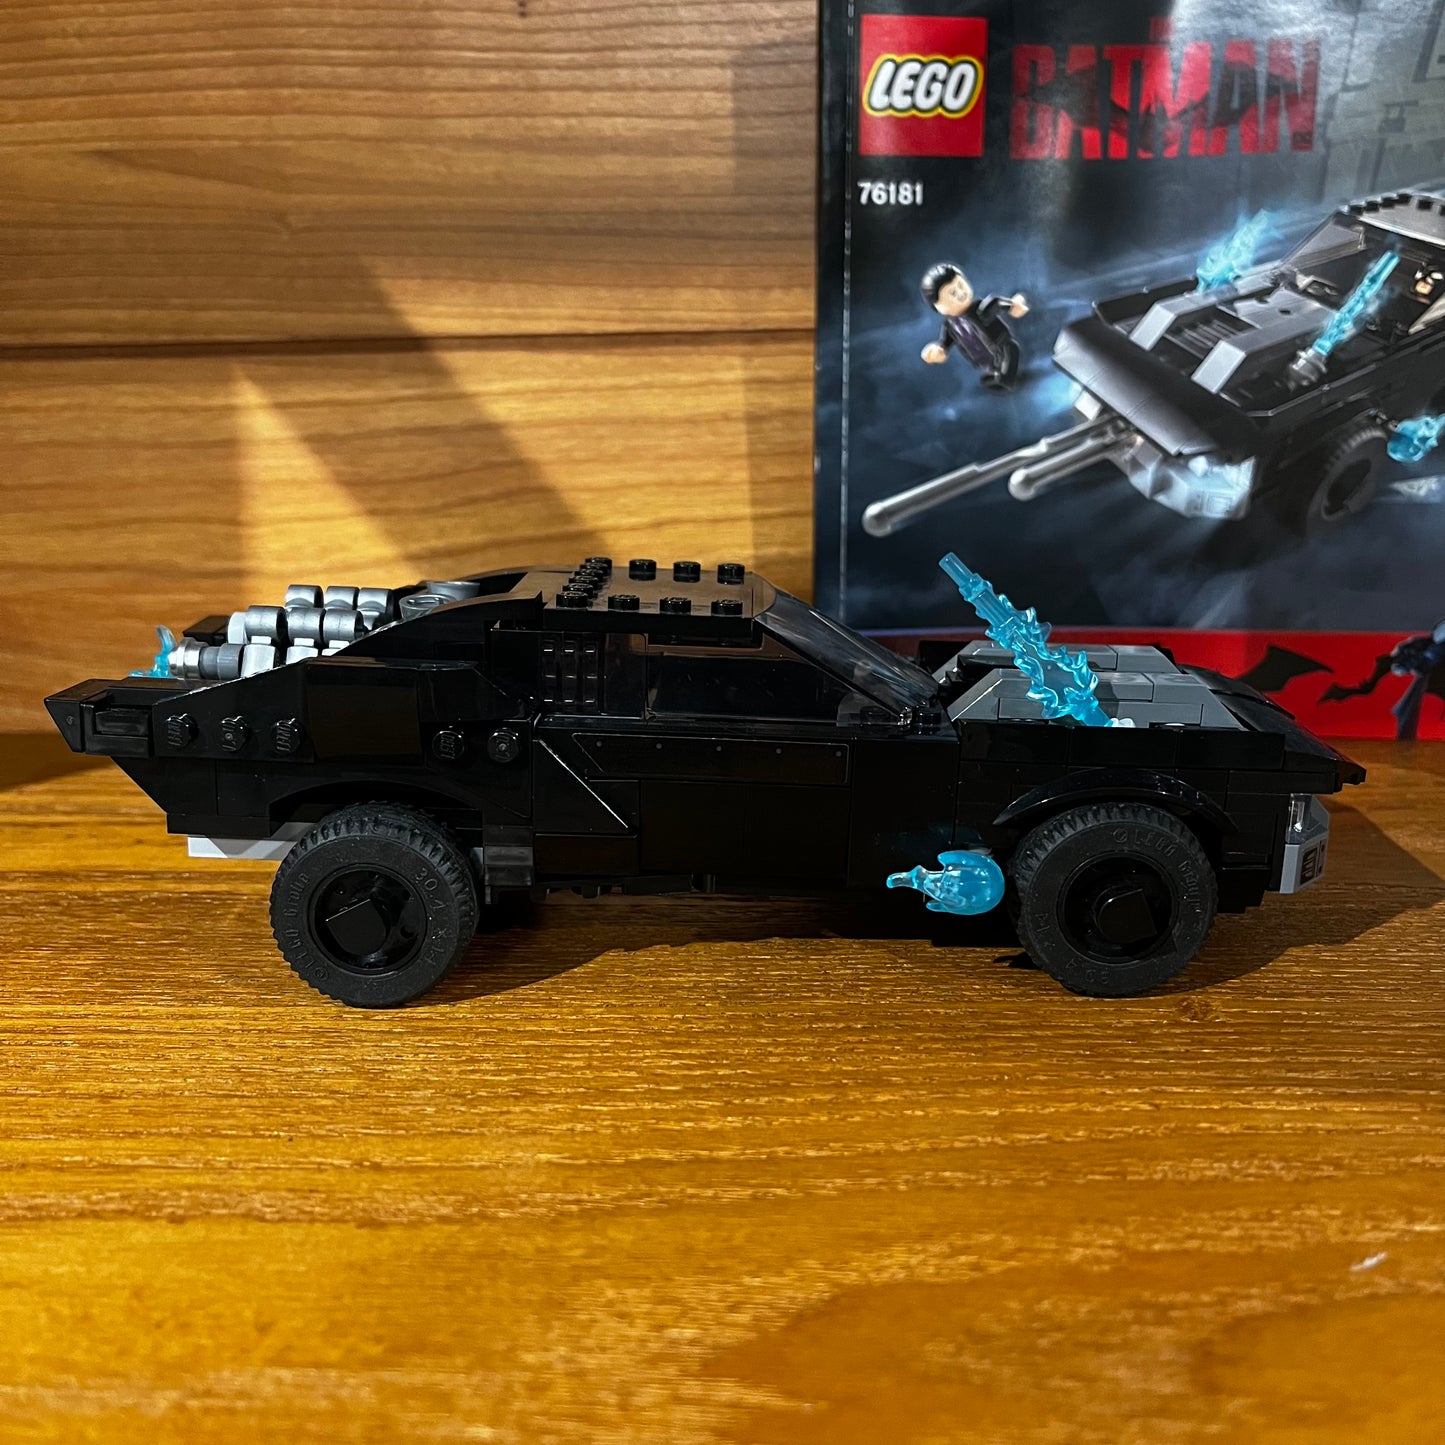 DC Batman Batmobile: The Penguin Chase Pre-Built Lego 76181 set